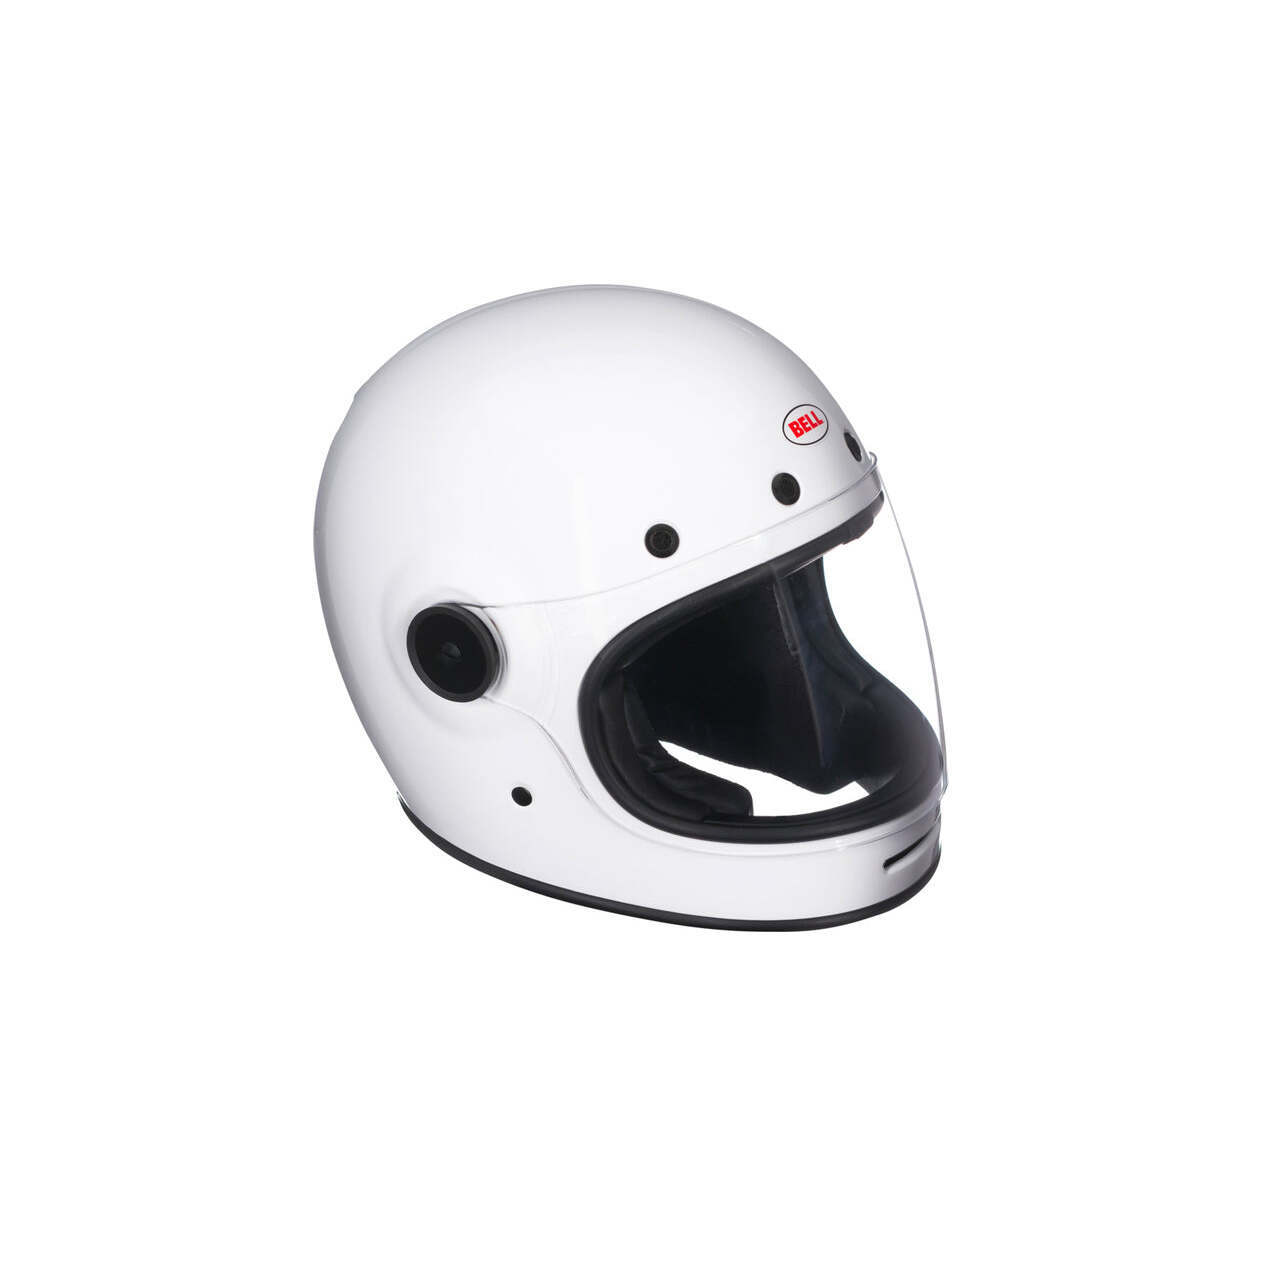 Surname imagine Resort Bell Bullitt White Helmet | Tamarit Motorcycles